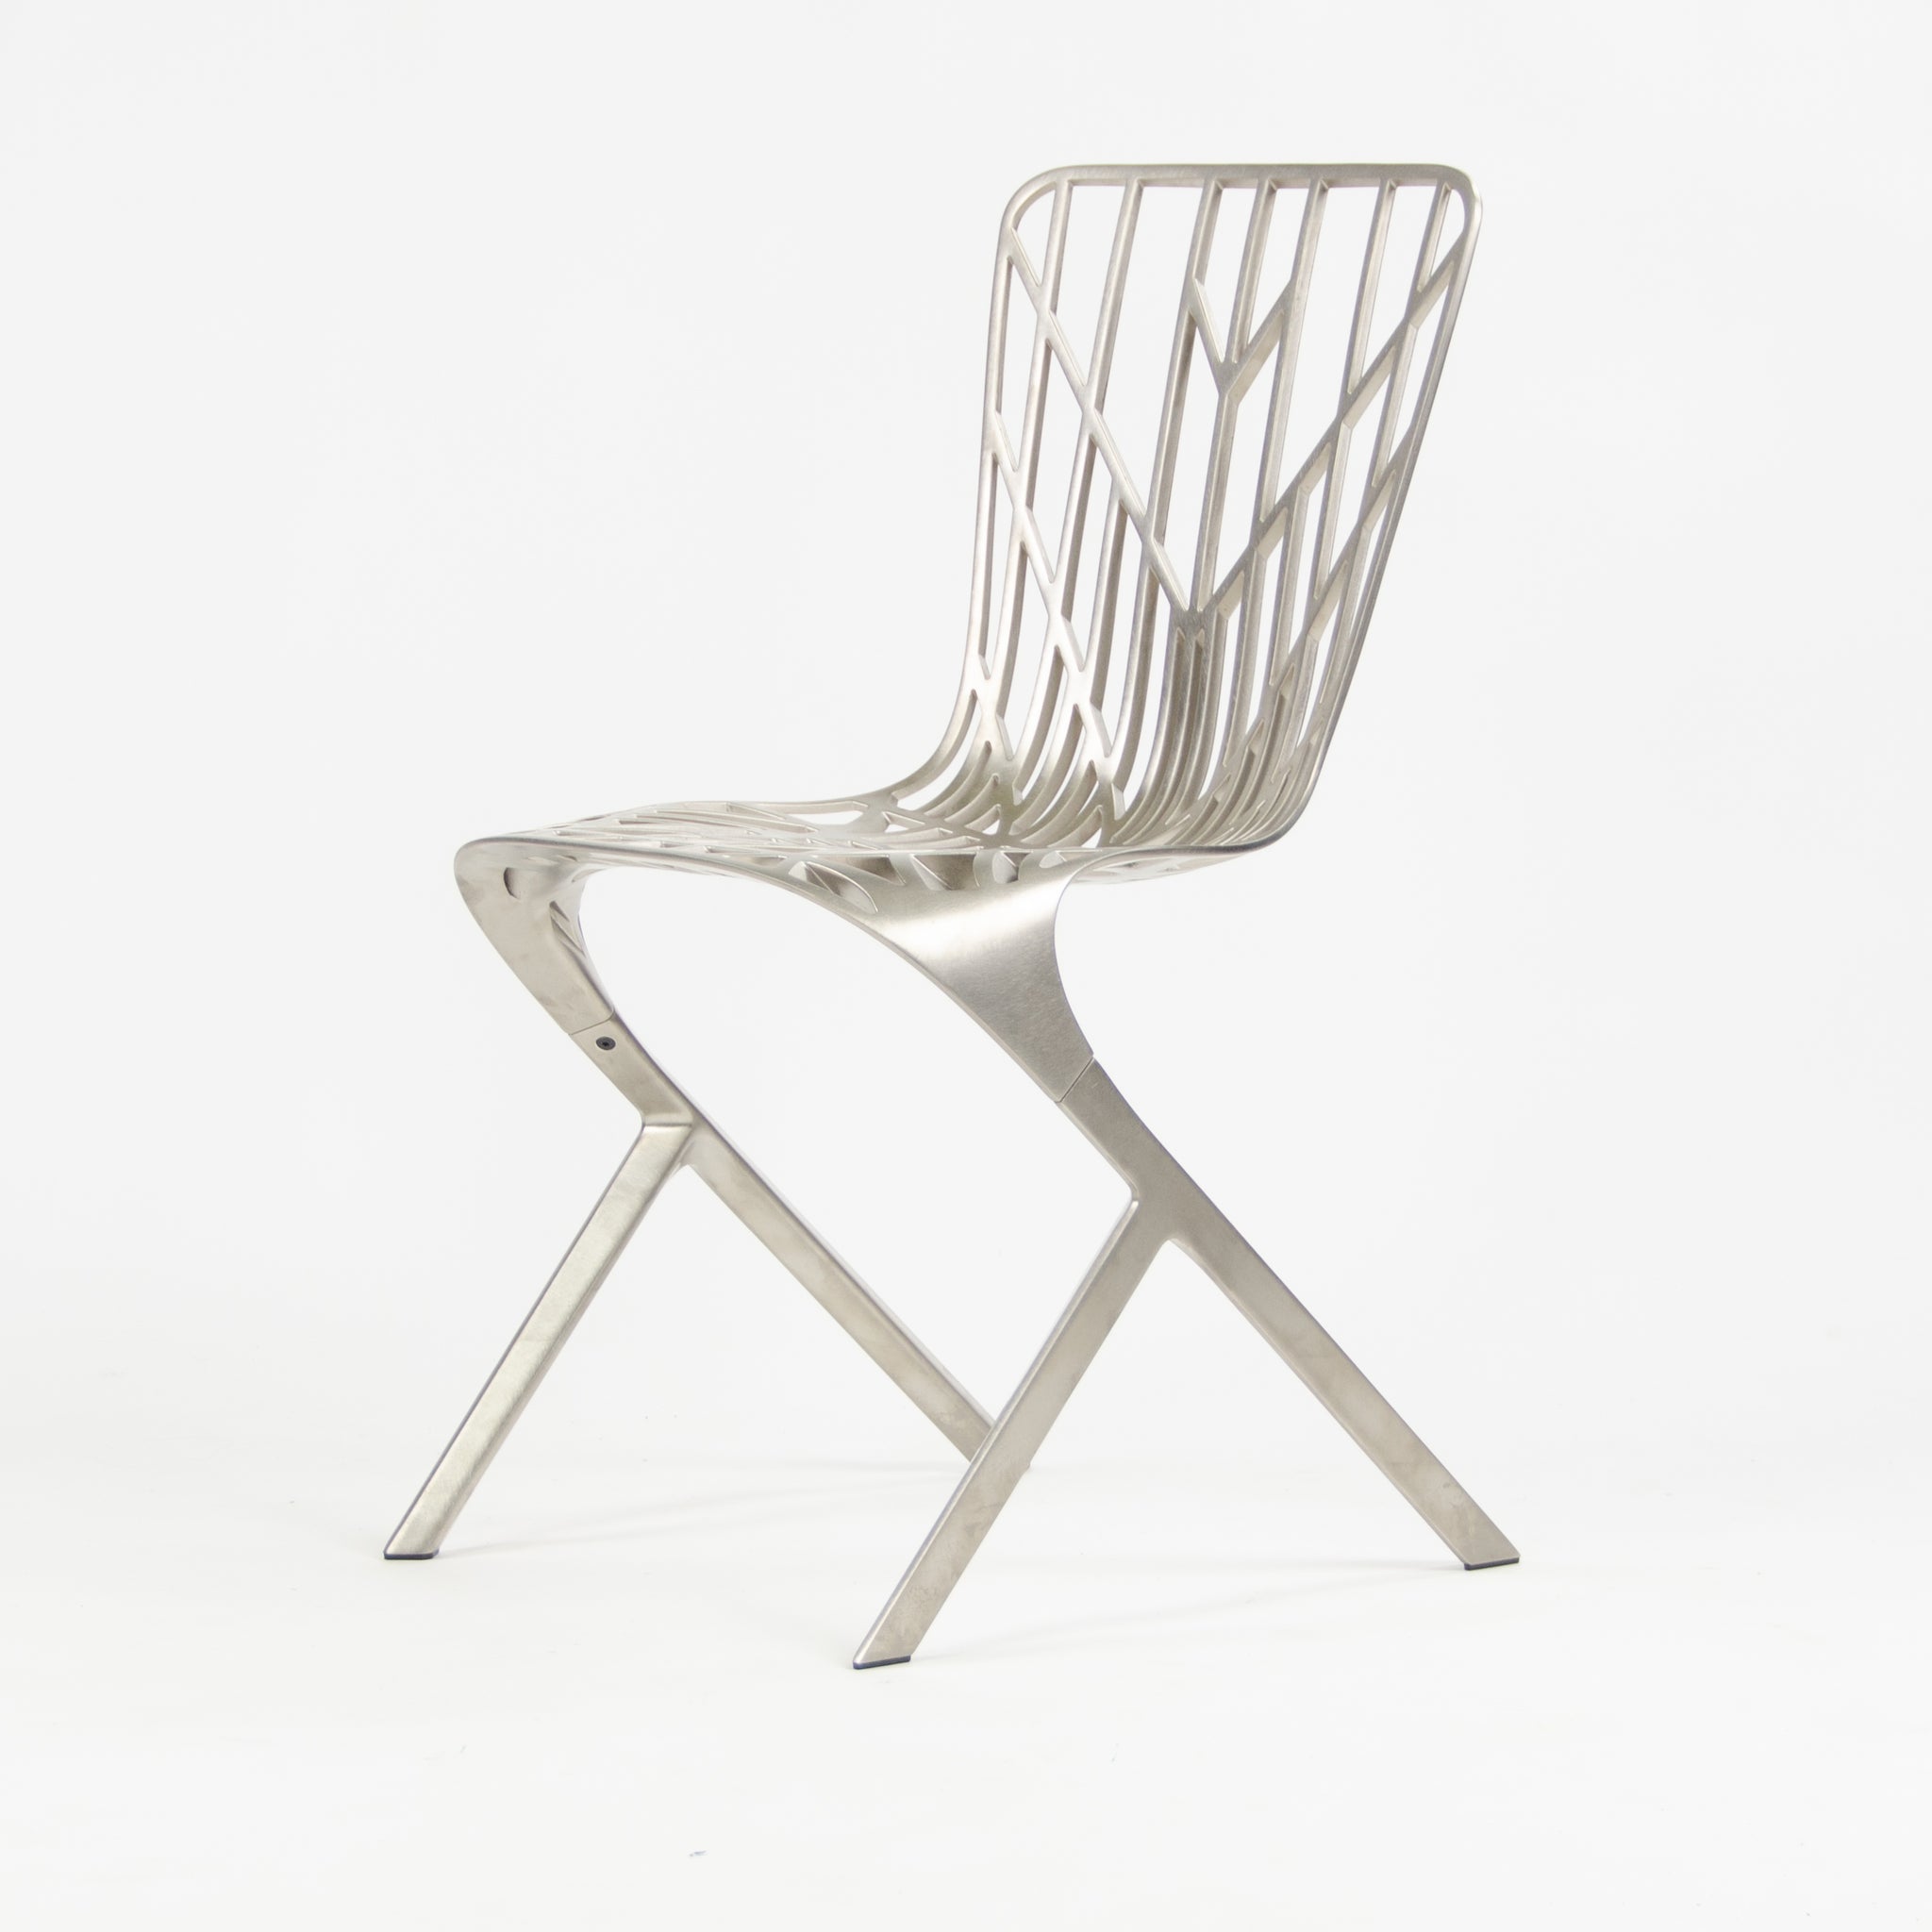 SOLD 2013 Knoll Studio David Adjaye Washington Skeleton Dining Chair Brushed Nickel